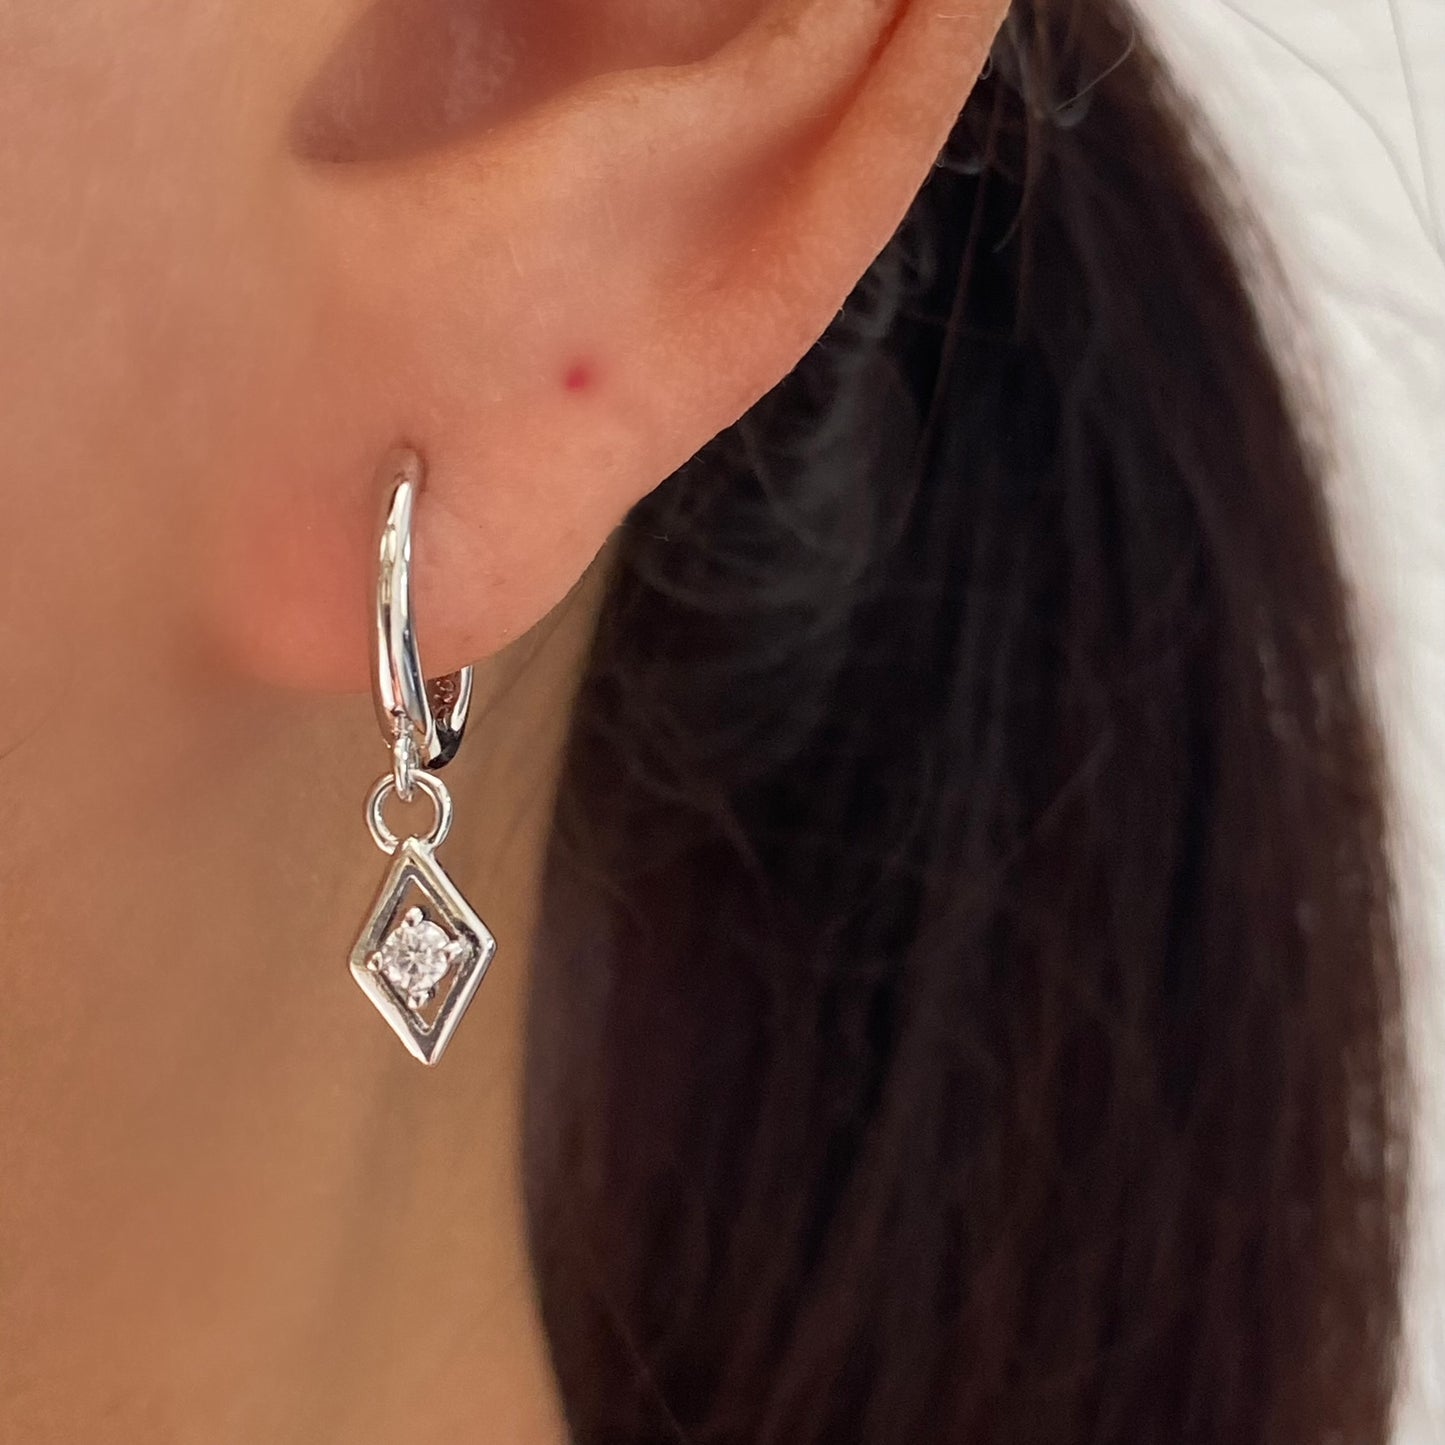 Dainty Silver Earrings, Diamond shape drop Earrings, Cubic Gold Huggie, Sterling Silver earrings, Rectangle earrings, Small Silver Earrings